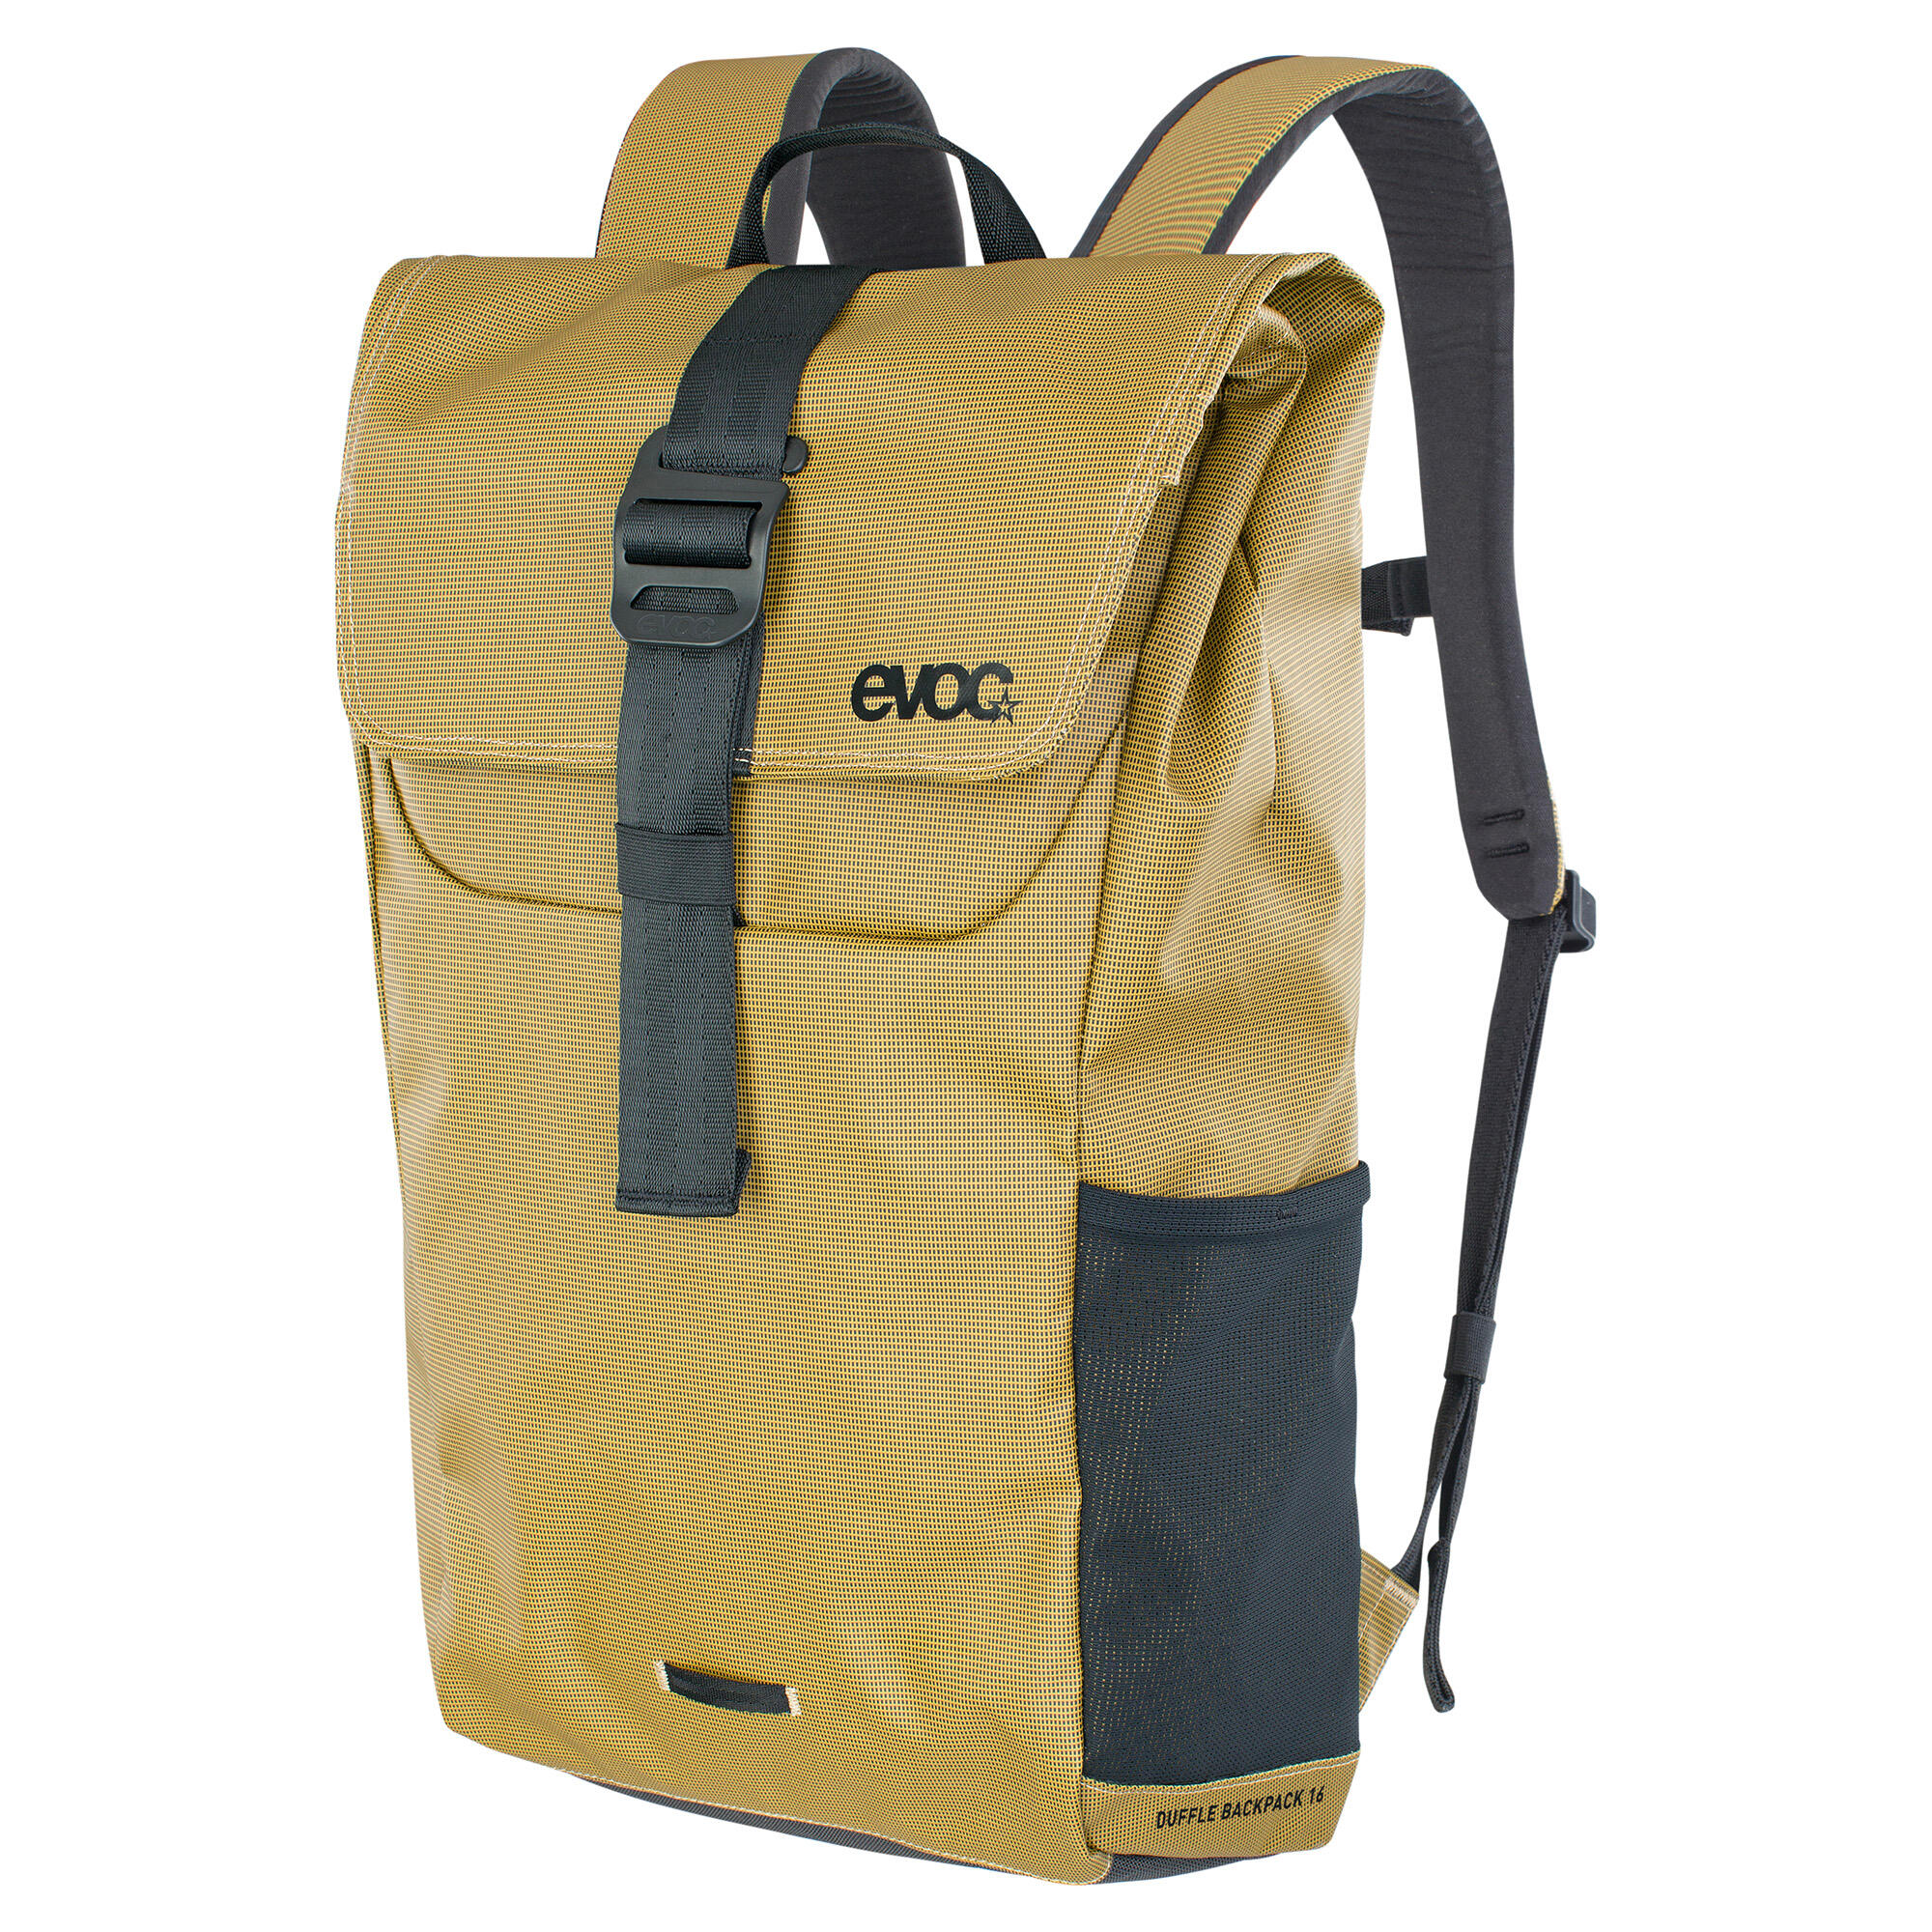 EVOC Duffle Backpack 6/7